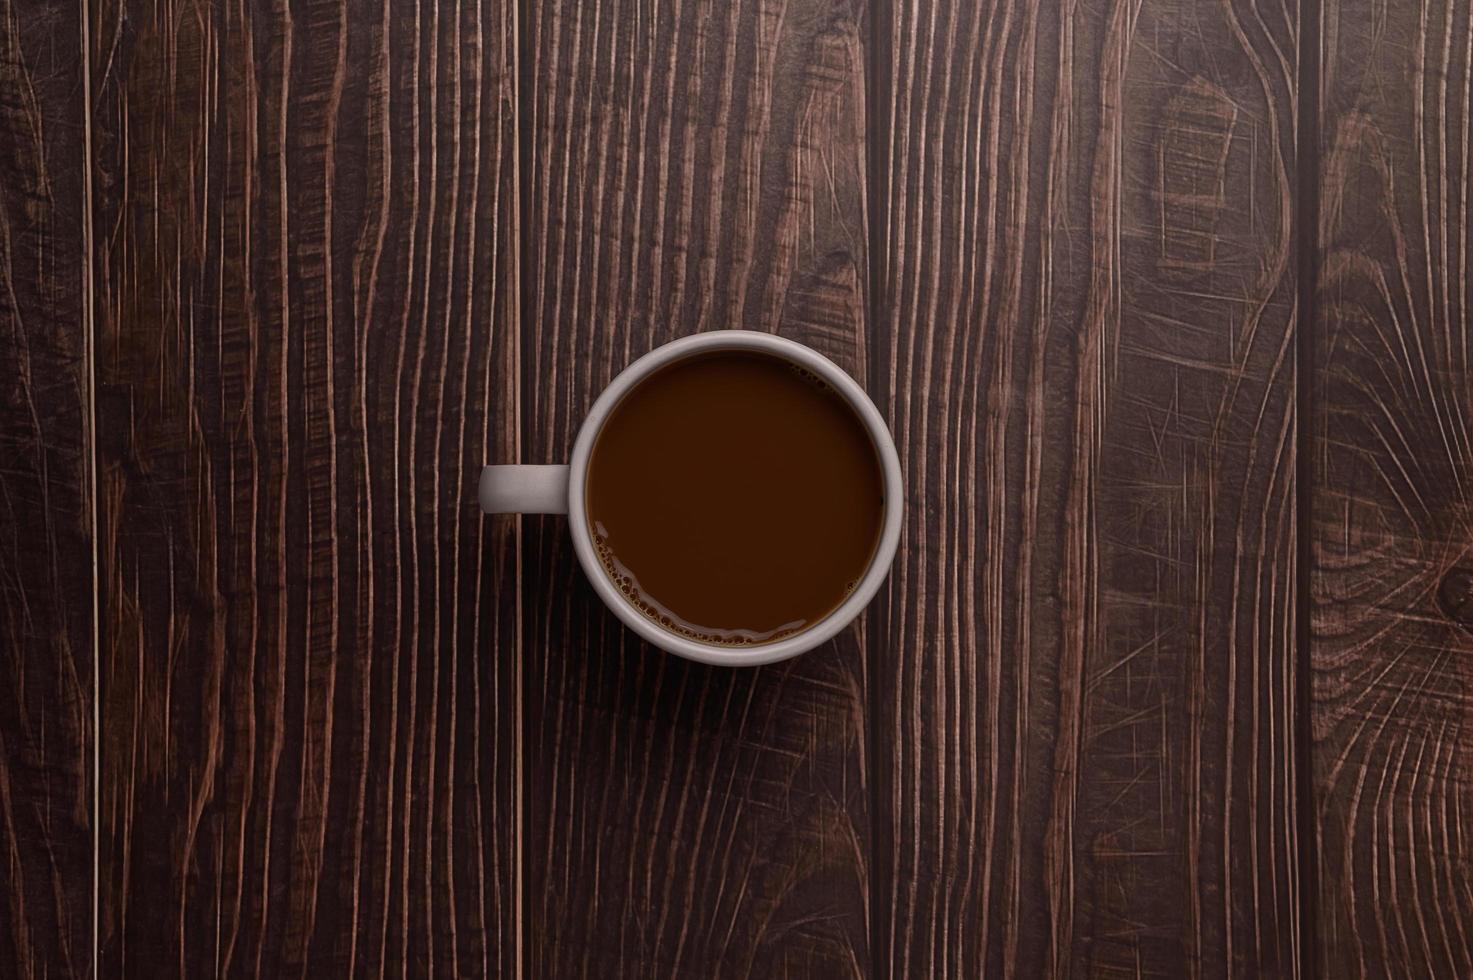 kaffemugg på träbakgrund foto